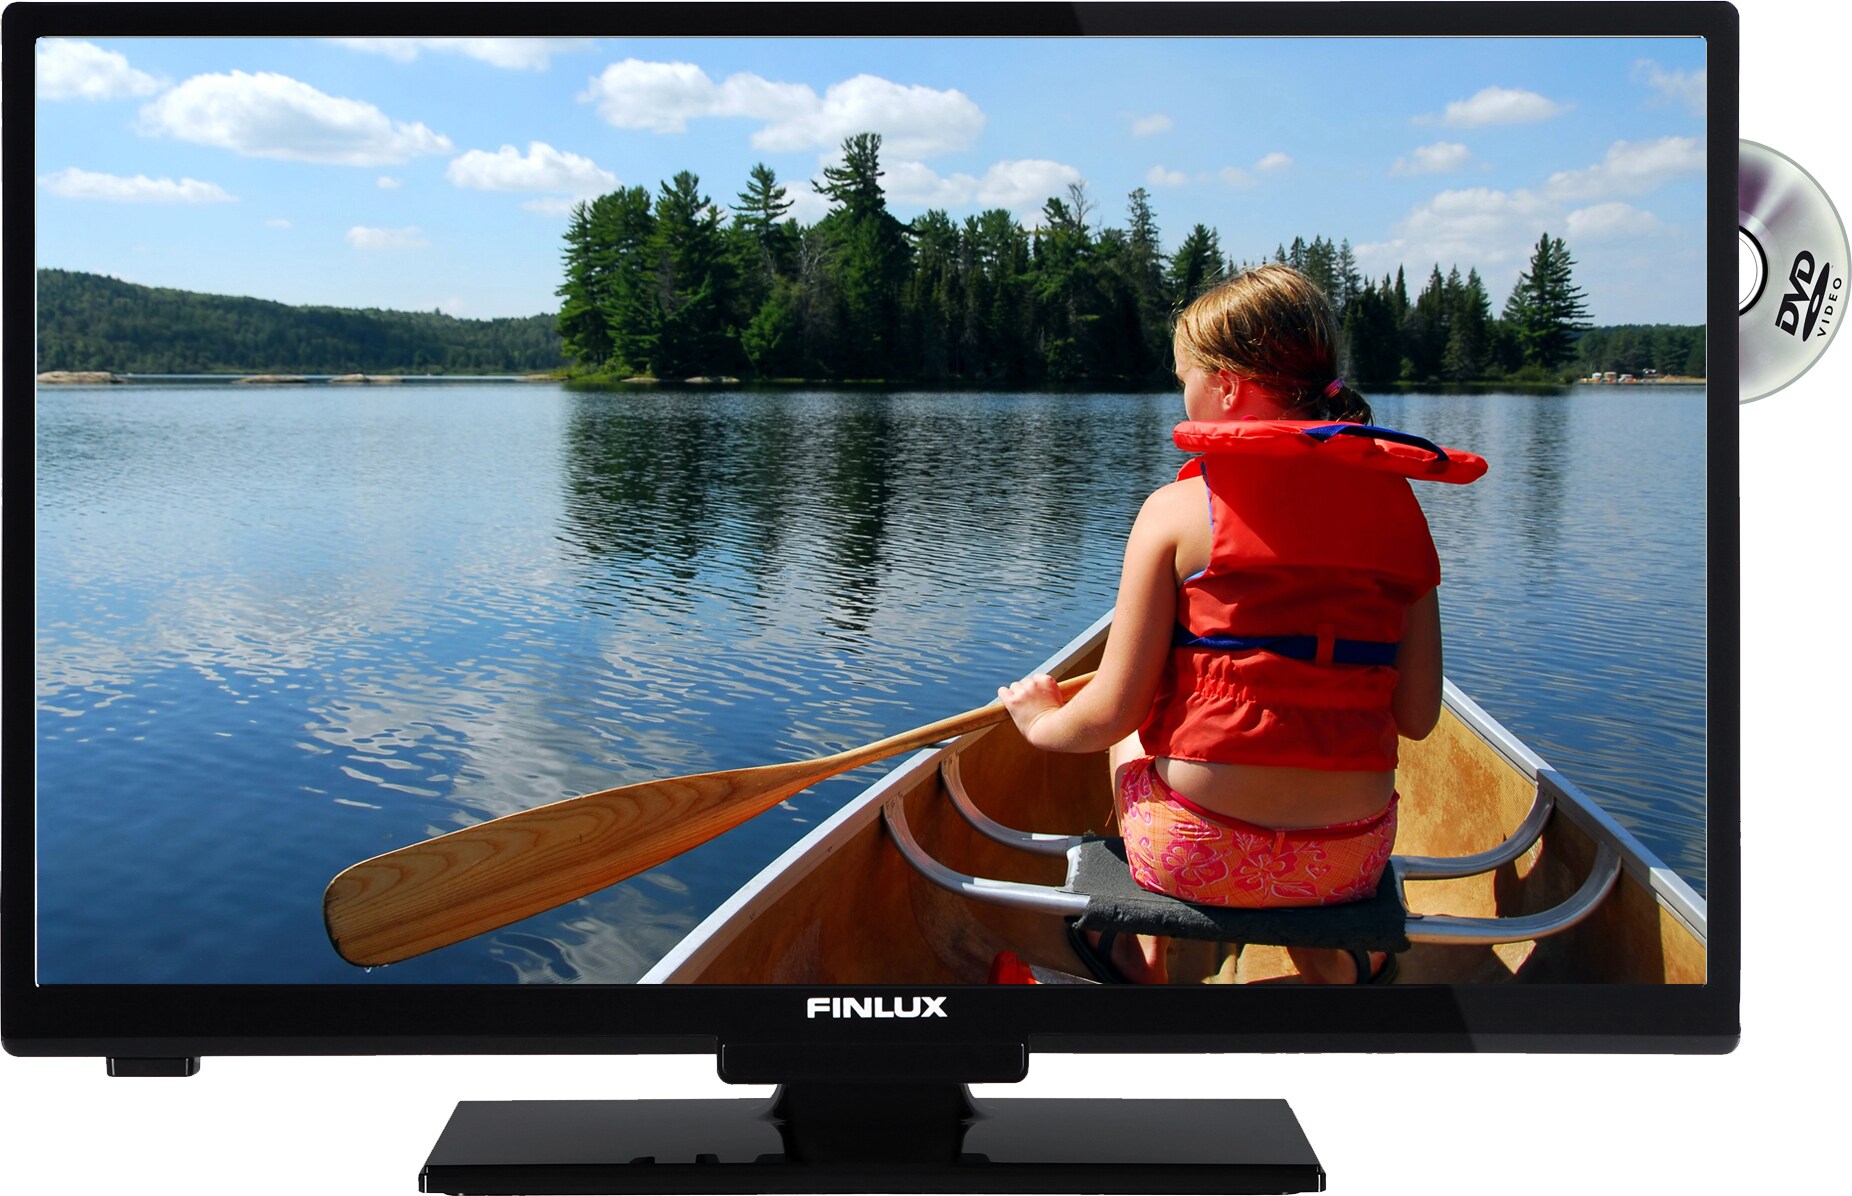 Finlux 24" FDMD5660 HD Ready 12V LED TV med DVD (2019) - Elgiganten